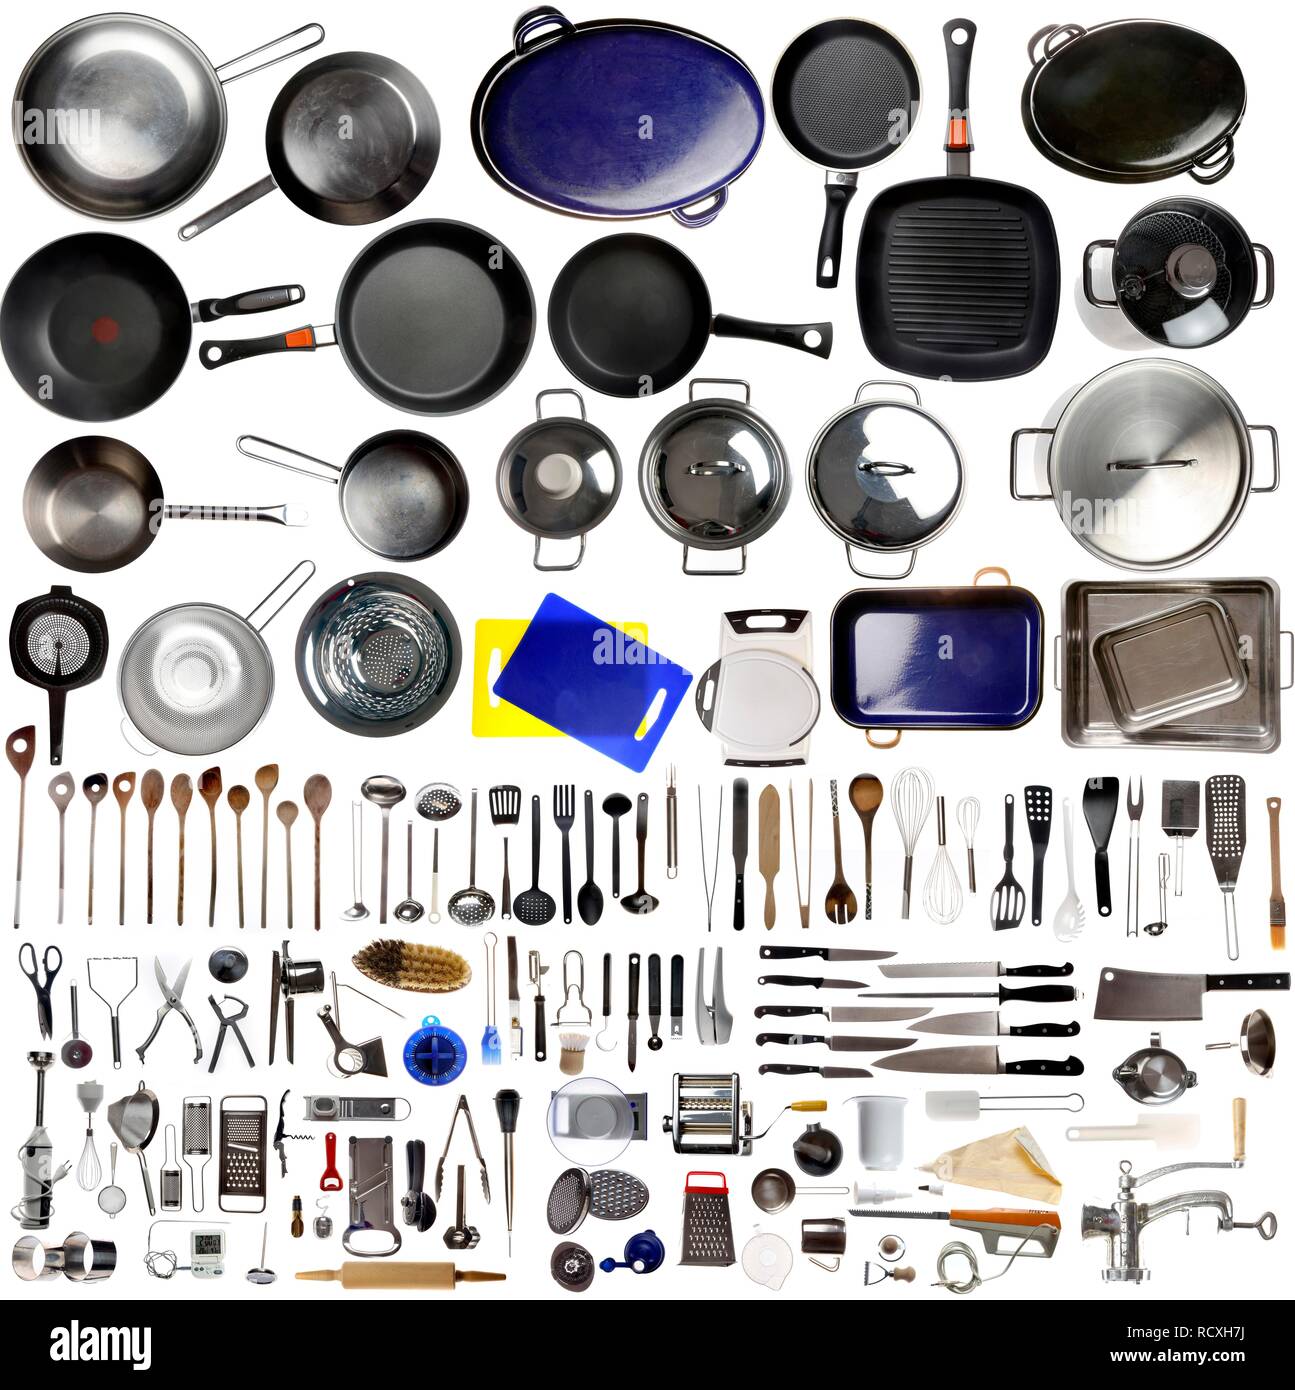 Electrodomésticos y utensilios de cocina conjunto de iconos